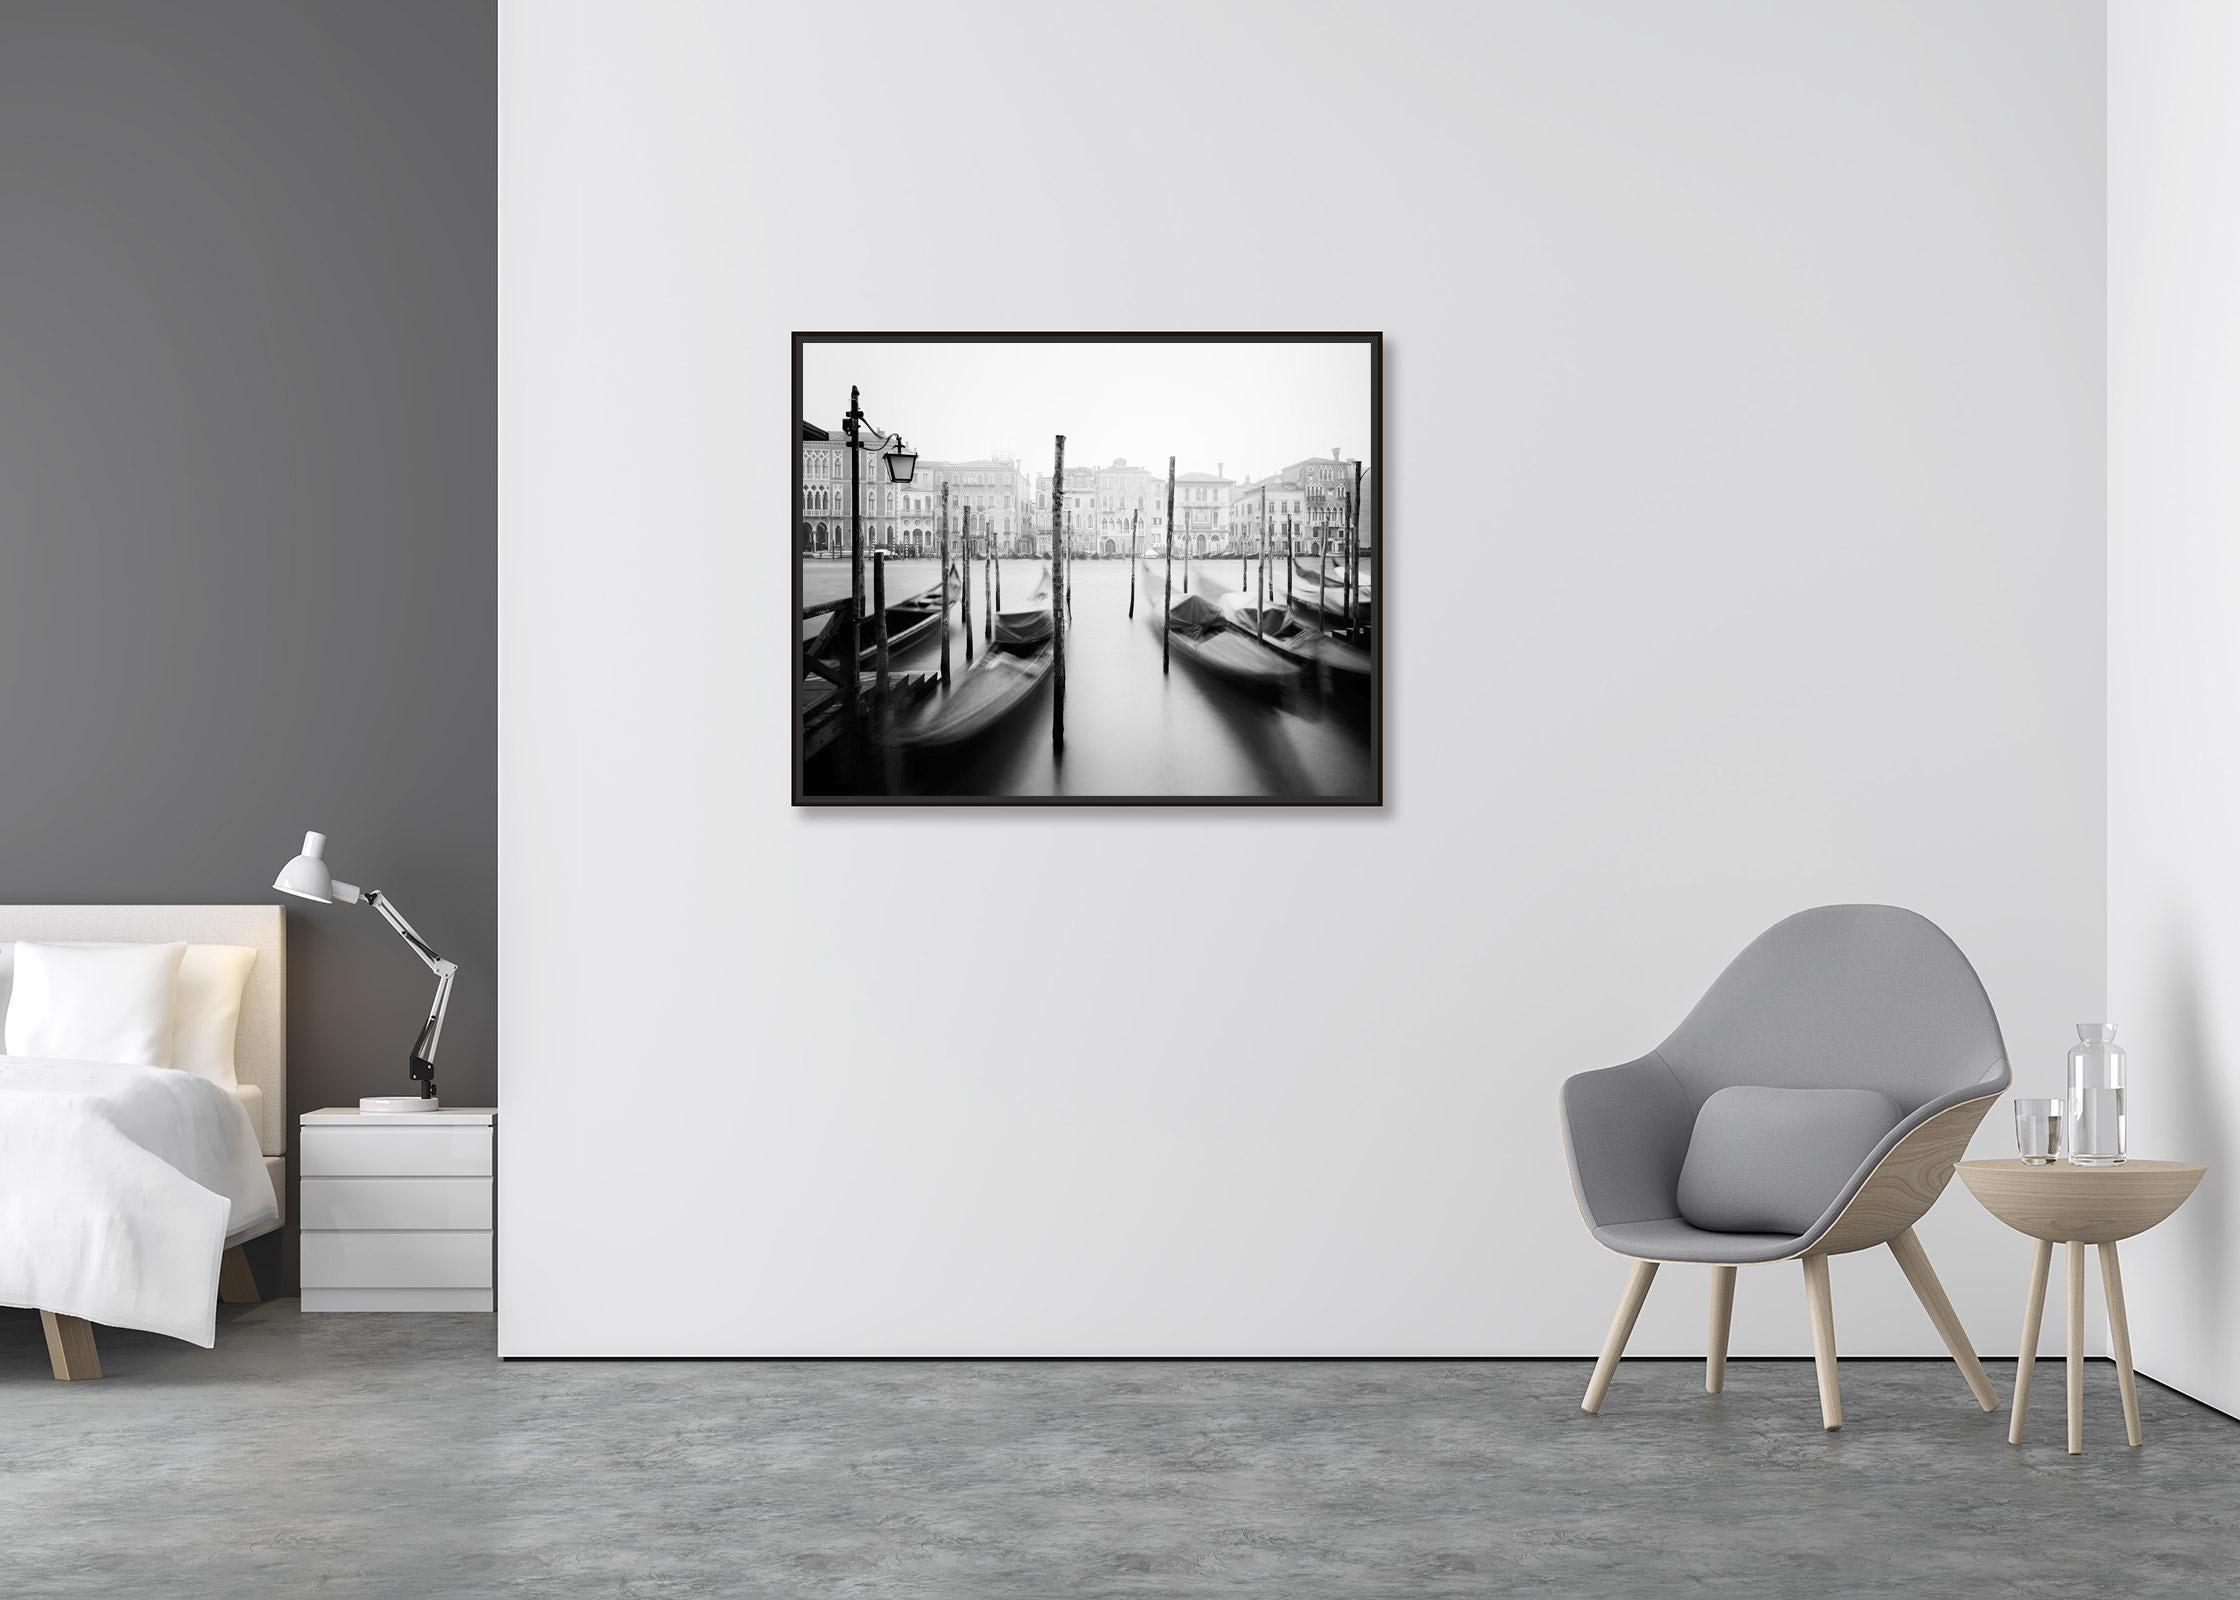 Góndola, Canal Grande, Venecia, fotografía artística en blanco y negro de paisajes urbanos - Photograph Contemporáneo de Gerald Berghammer